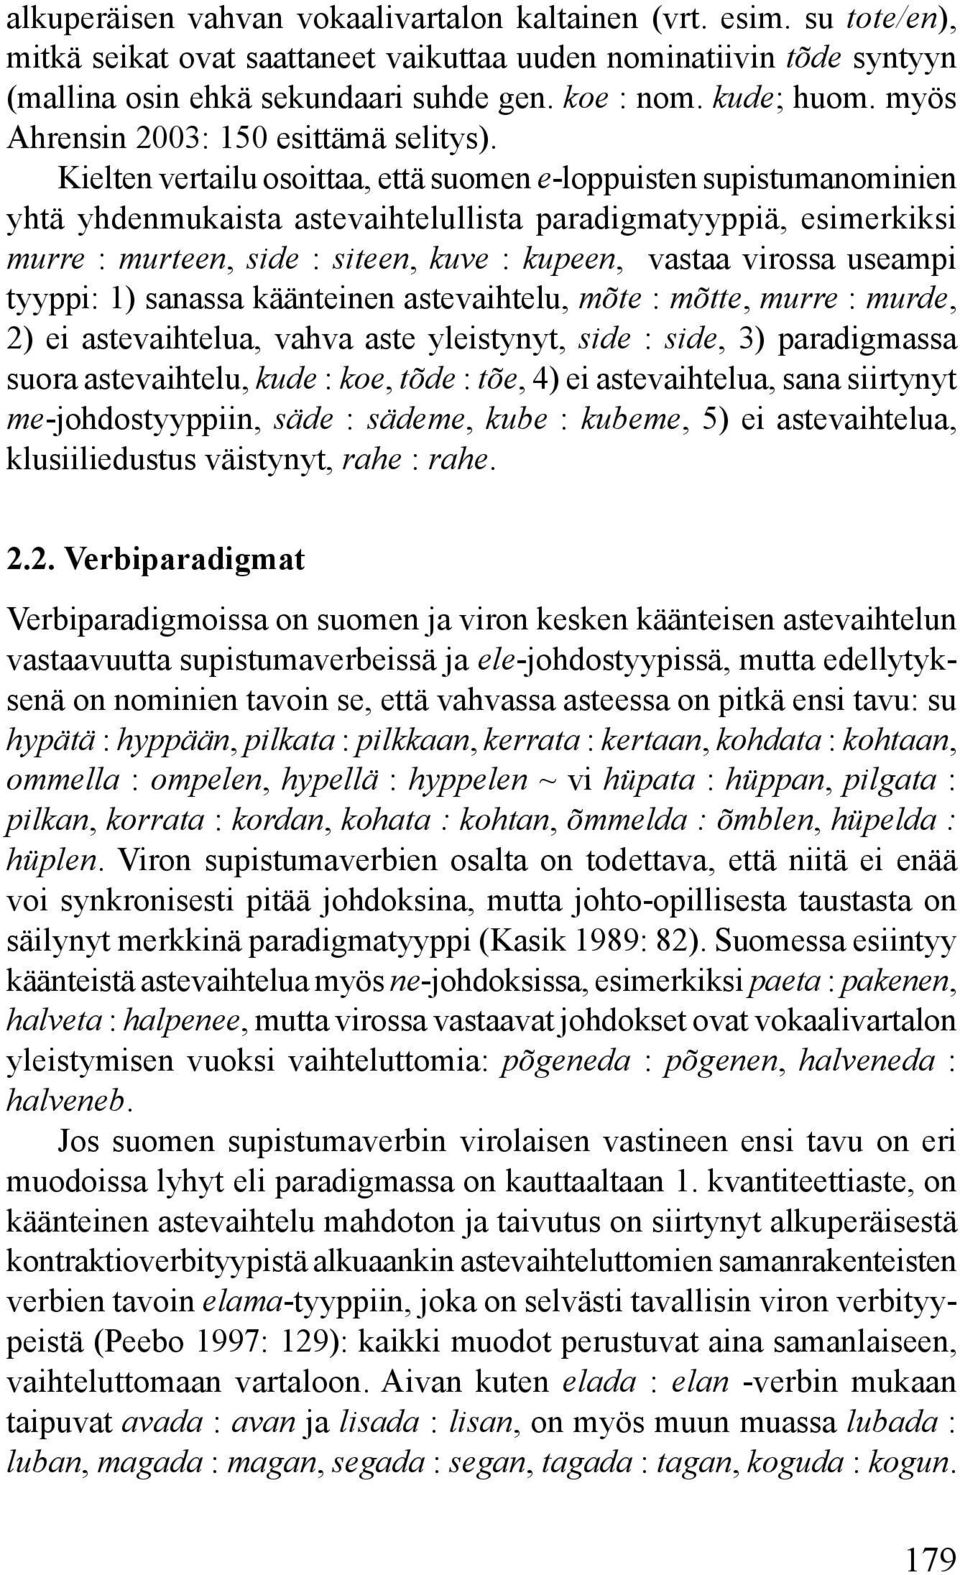 Kielten vertailu osoittaa, että suomen e-loppuisten supistumanominien yhtä yhdenmukaista astevaihtelullista paradigmatyyppiä, esimerkiksi murre : murteen, side : siteen, kuve : kupeen, vastaa virossa